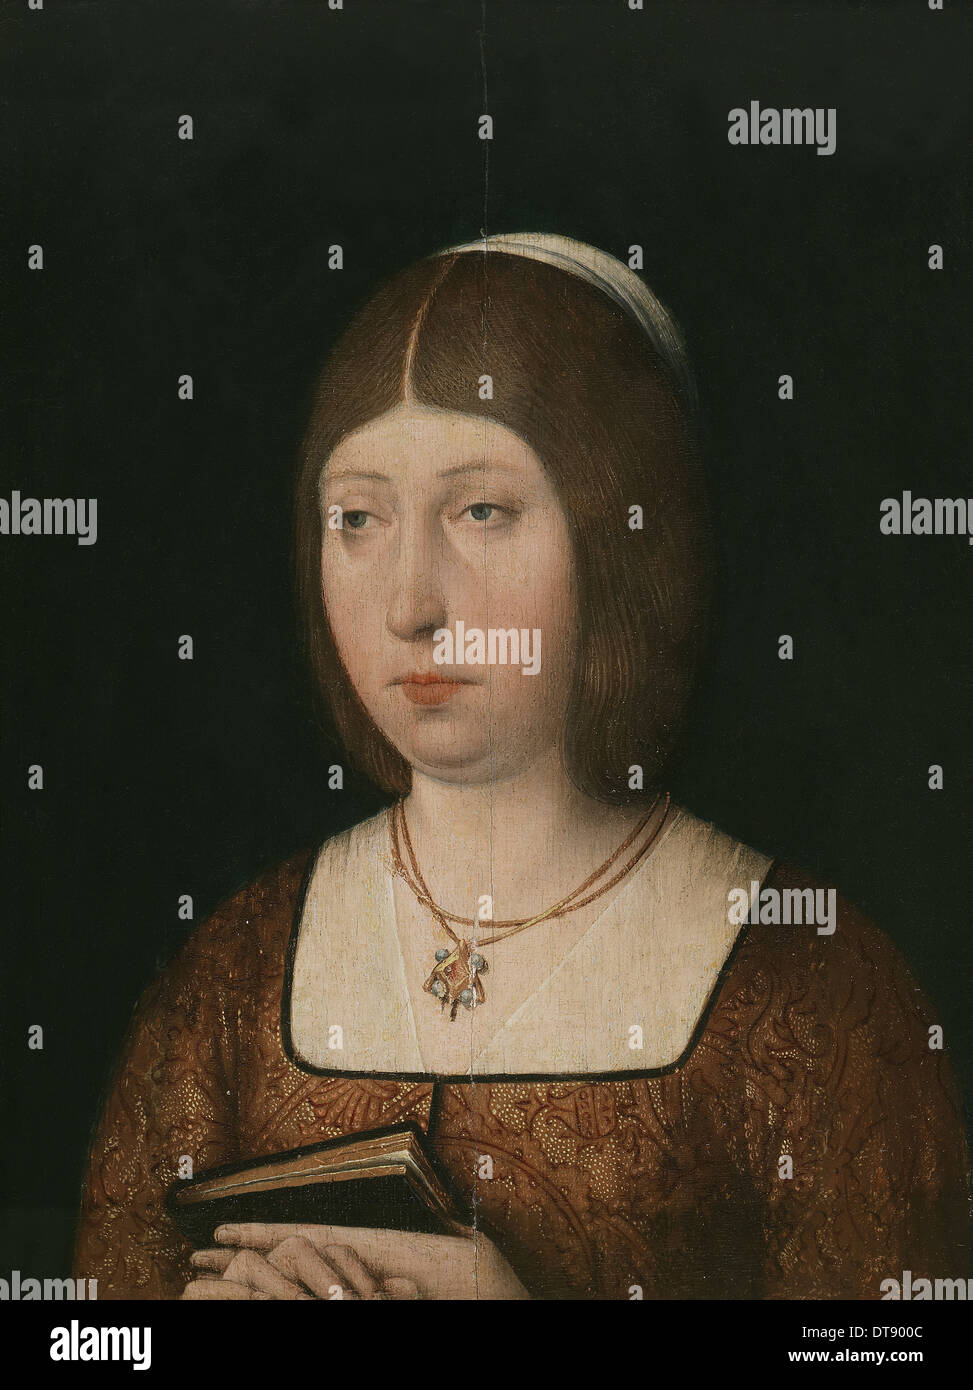 Königin Isabella i. von Kastilien, c. 1490. Künstler: anonym Stockfoto